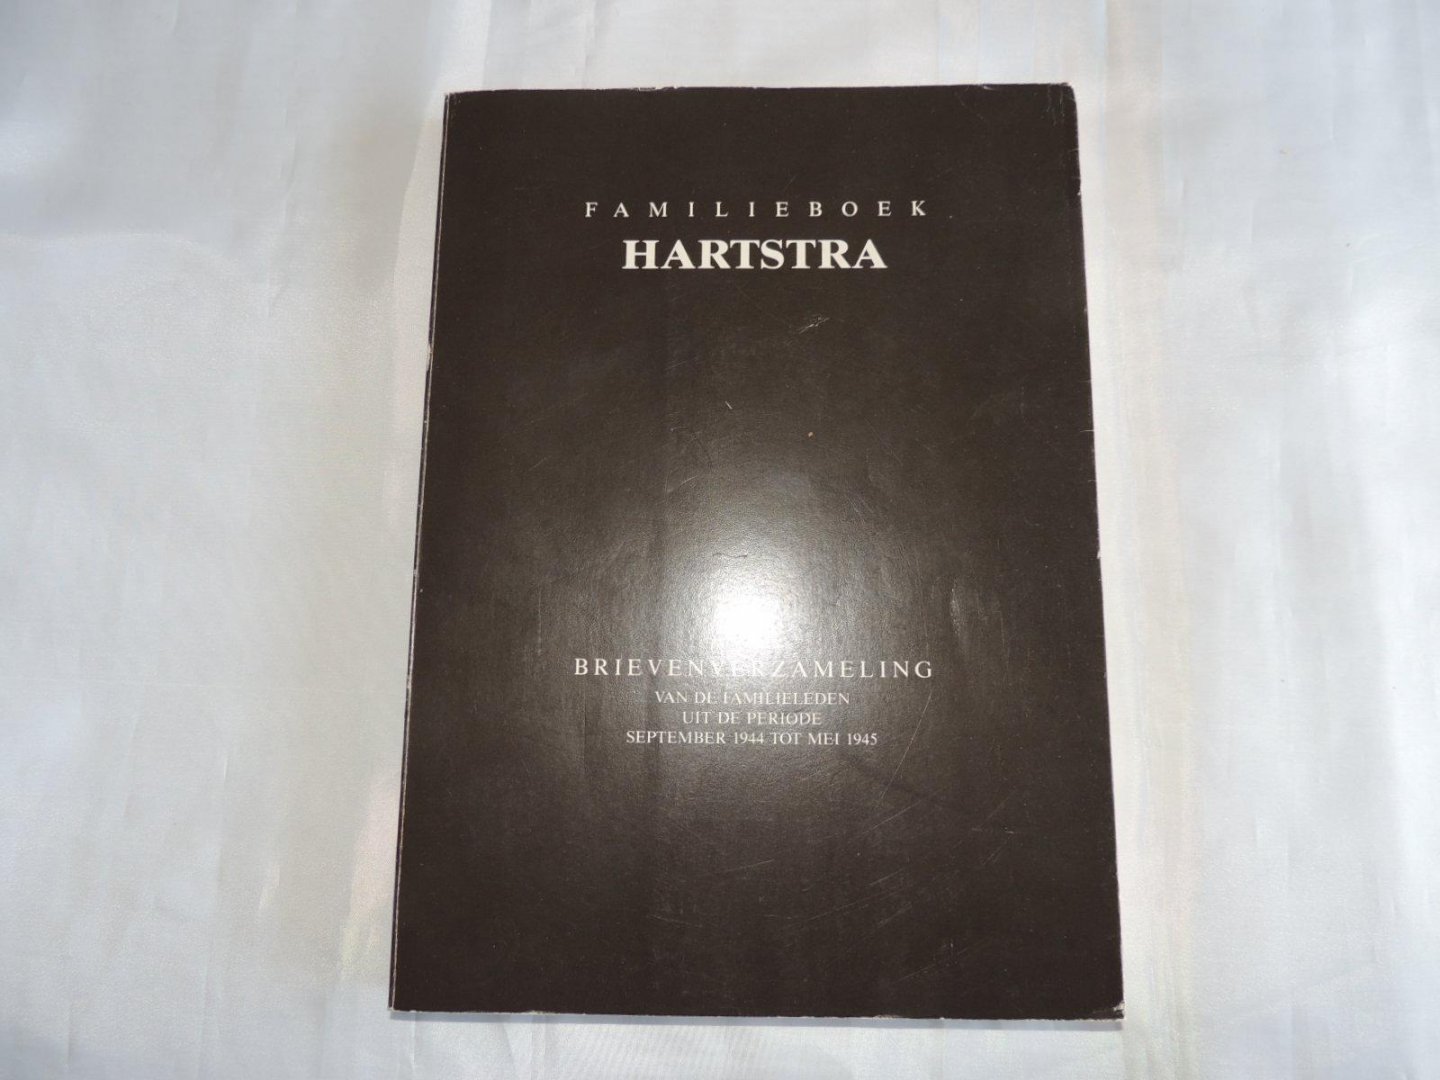 Hartstra Henk - FAMILIEBOEK HARTSTRA Familie Boek - Brievenverzameling van de familieleden uit de periode September 1944 tot Mei 1945.